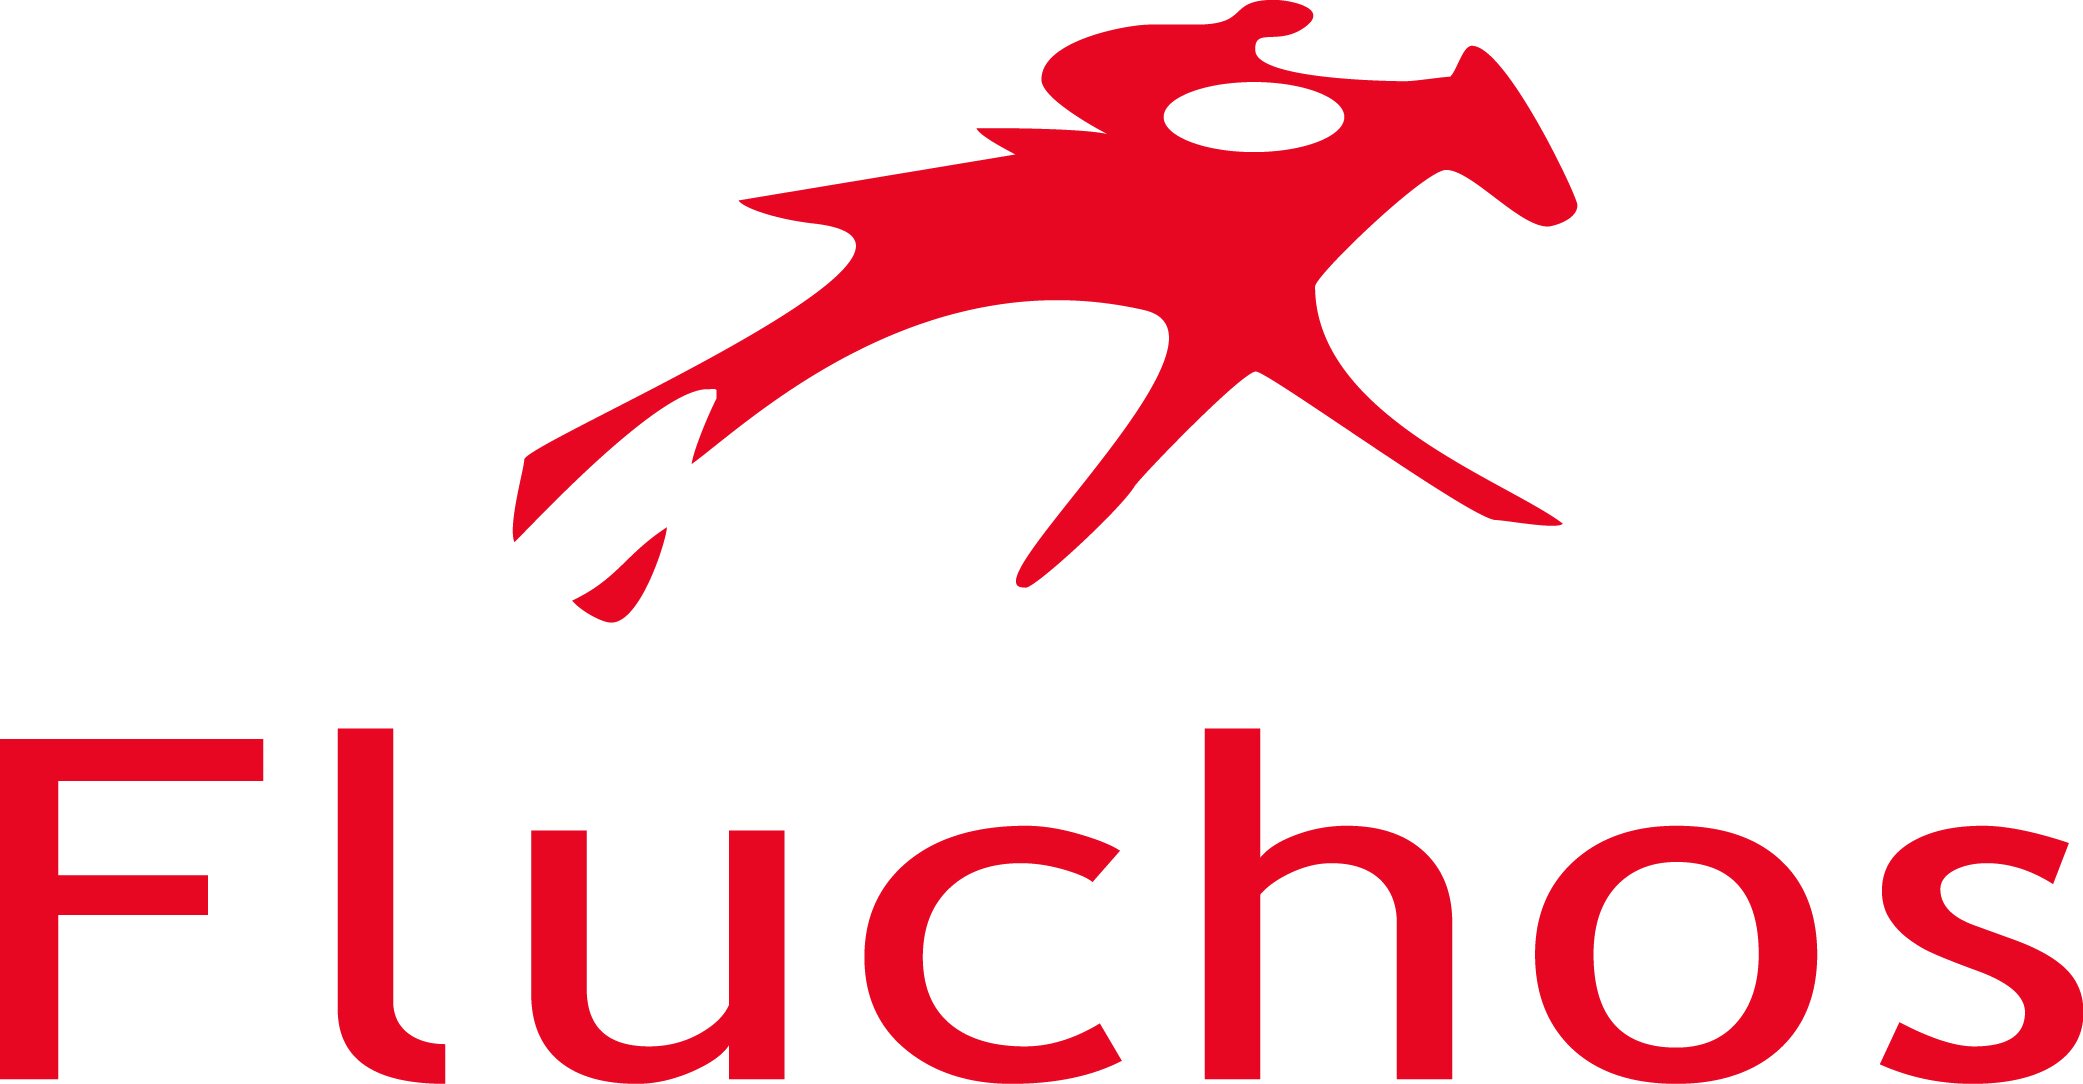 FLUCHOS logo.jpg